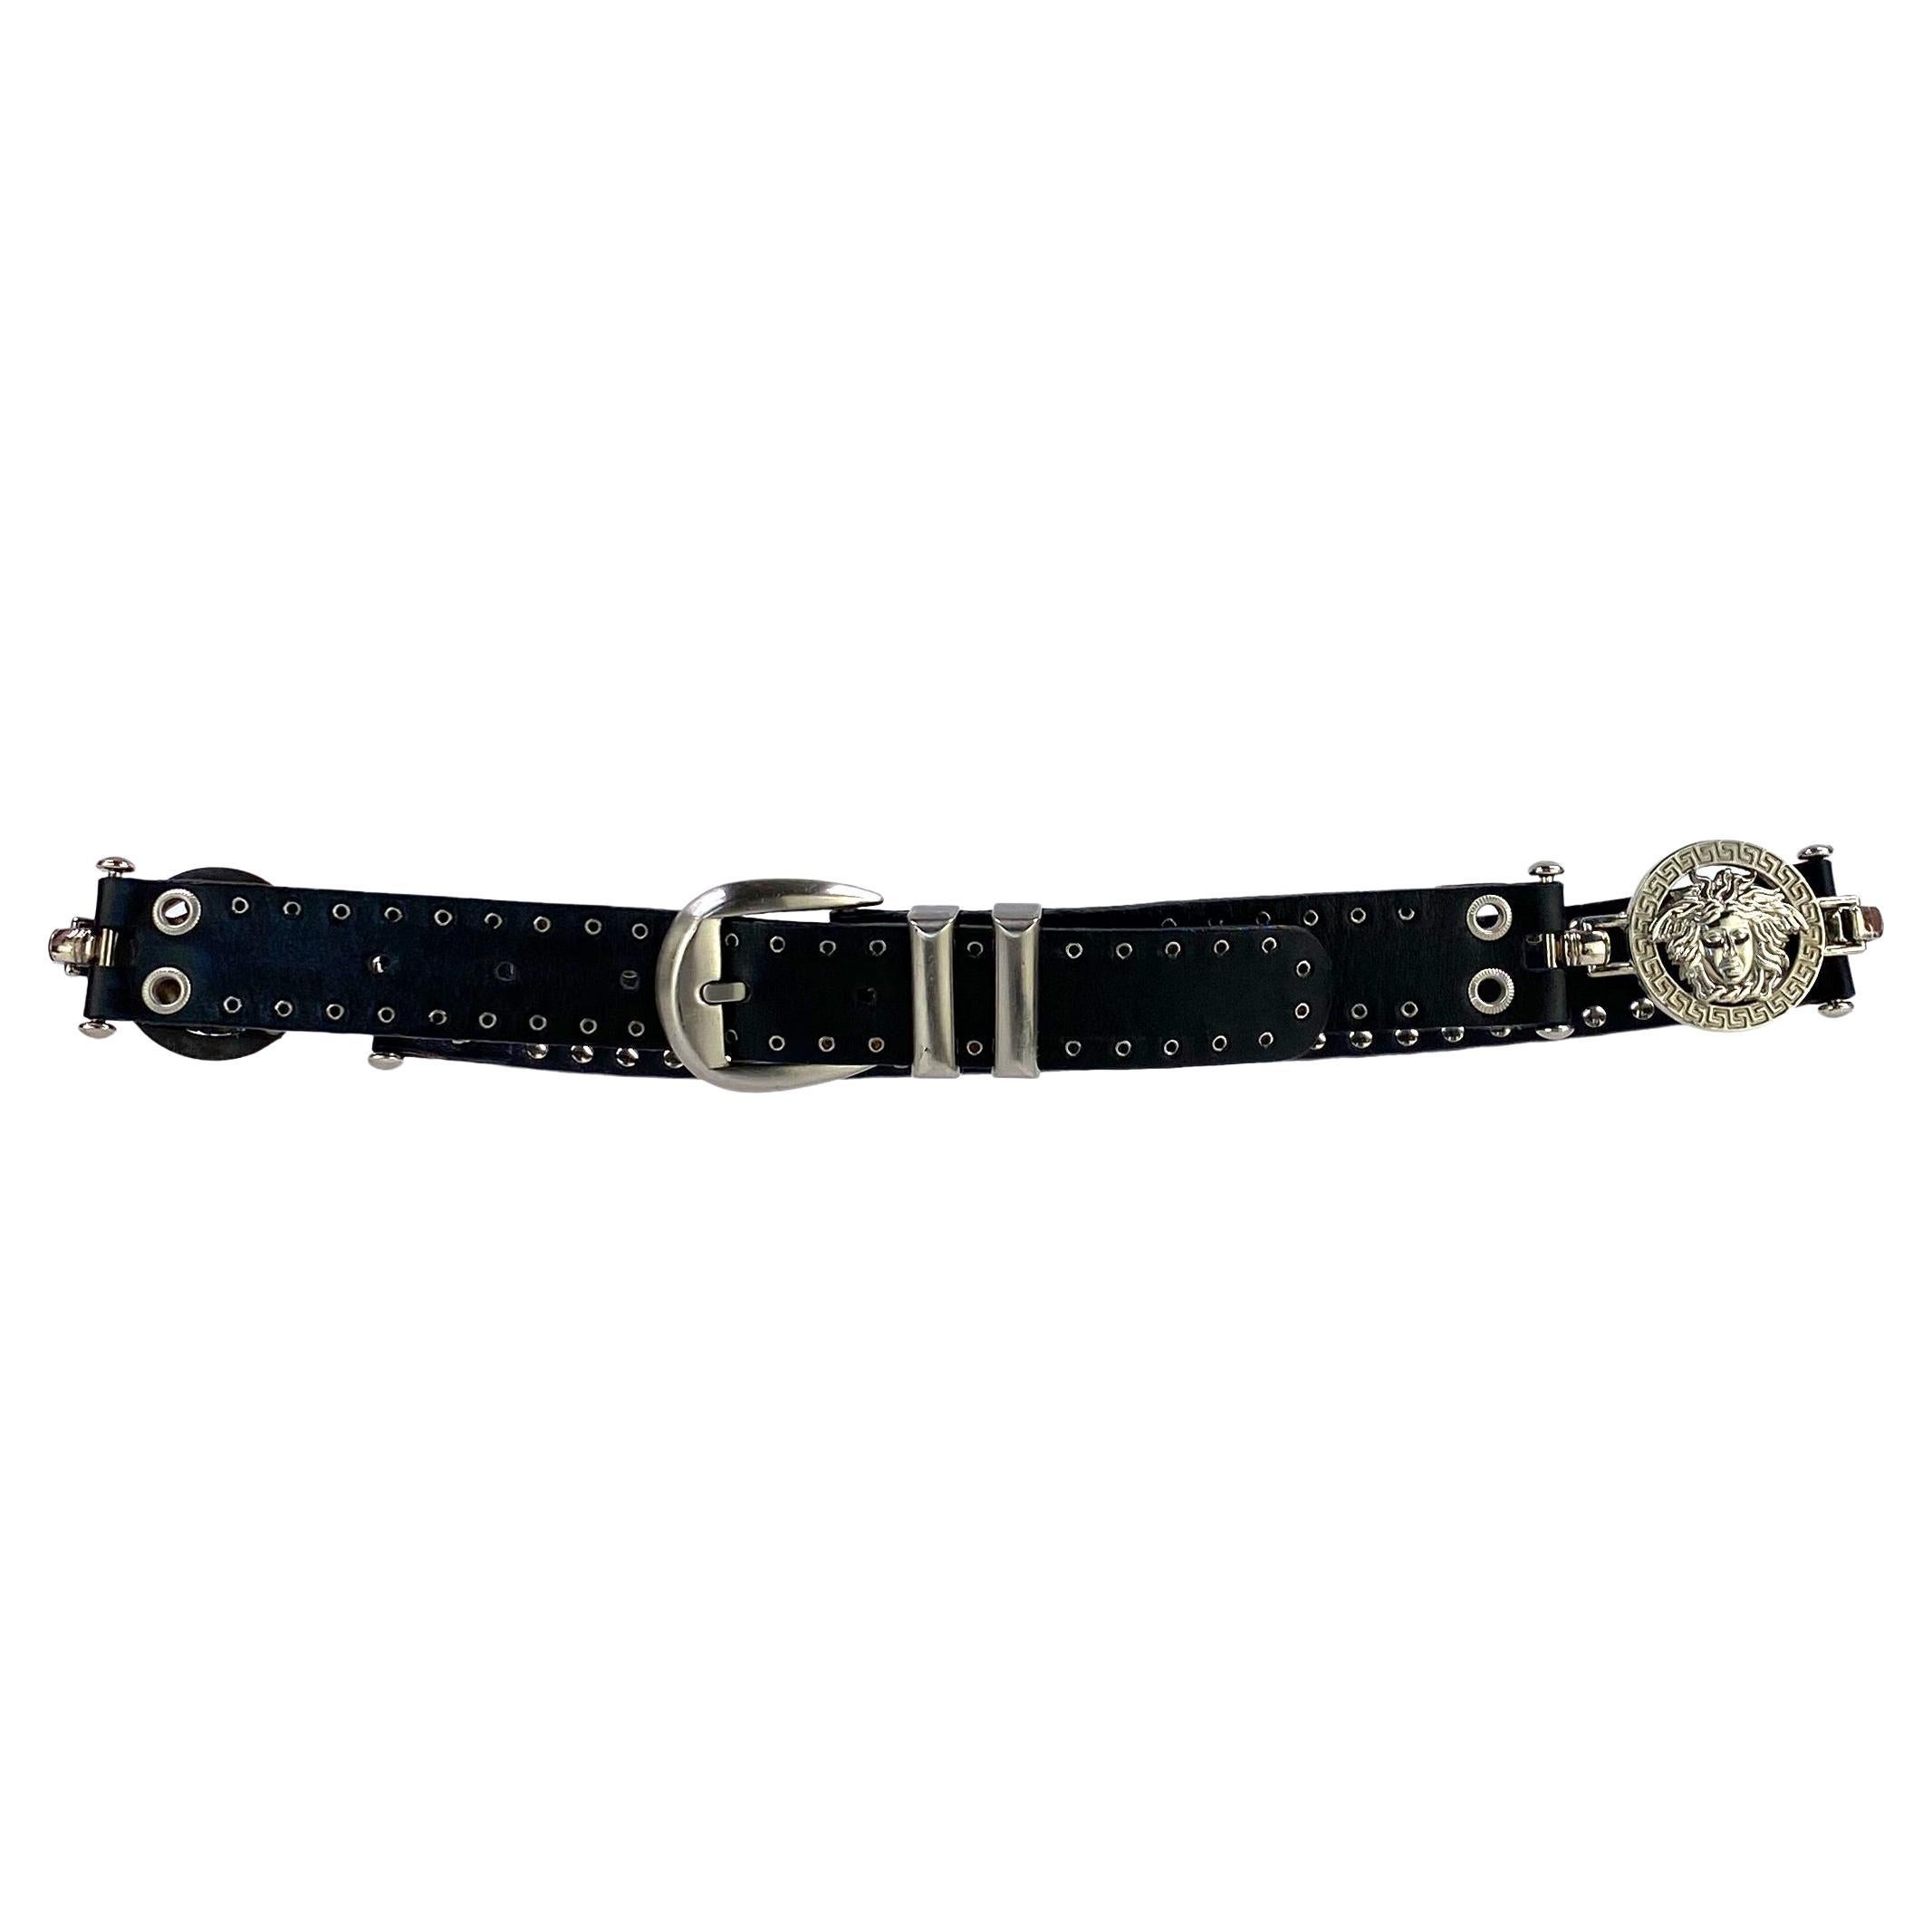 S/S 1994 Gianni Versace Medusa Medallion Black Leather Grommet Belt For Sale